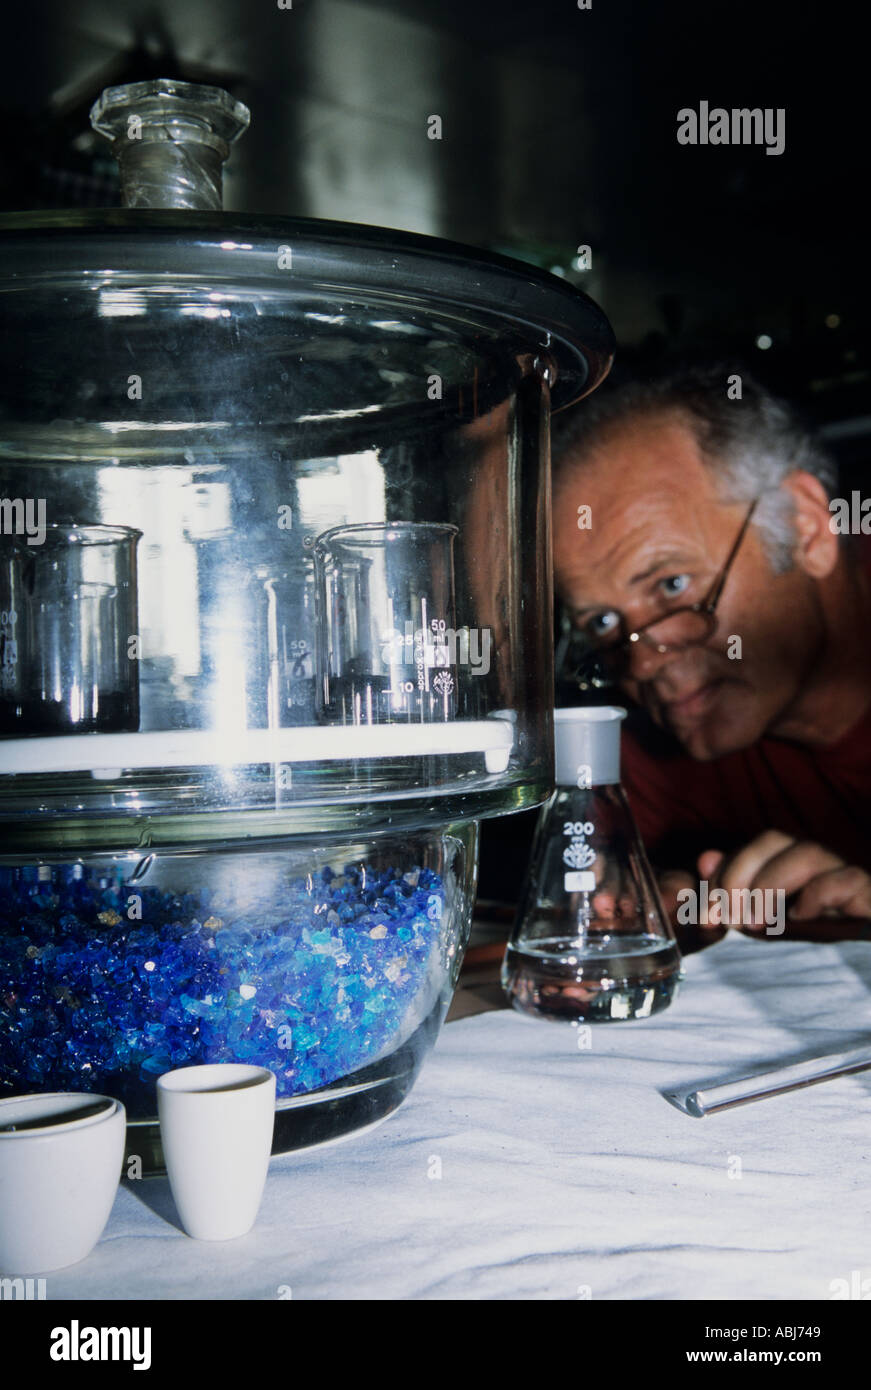 Serbien, Jugoslawien. Wasseraufbereitung; männliche Arbeiter im Labor Fläschchen in ein Glas Exsikkator mit Kobalt-Chlorid Trockenmittel Kristallperlen in der Basis zu betrachten. Stockfoto